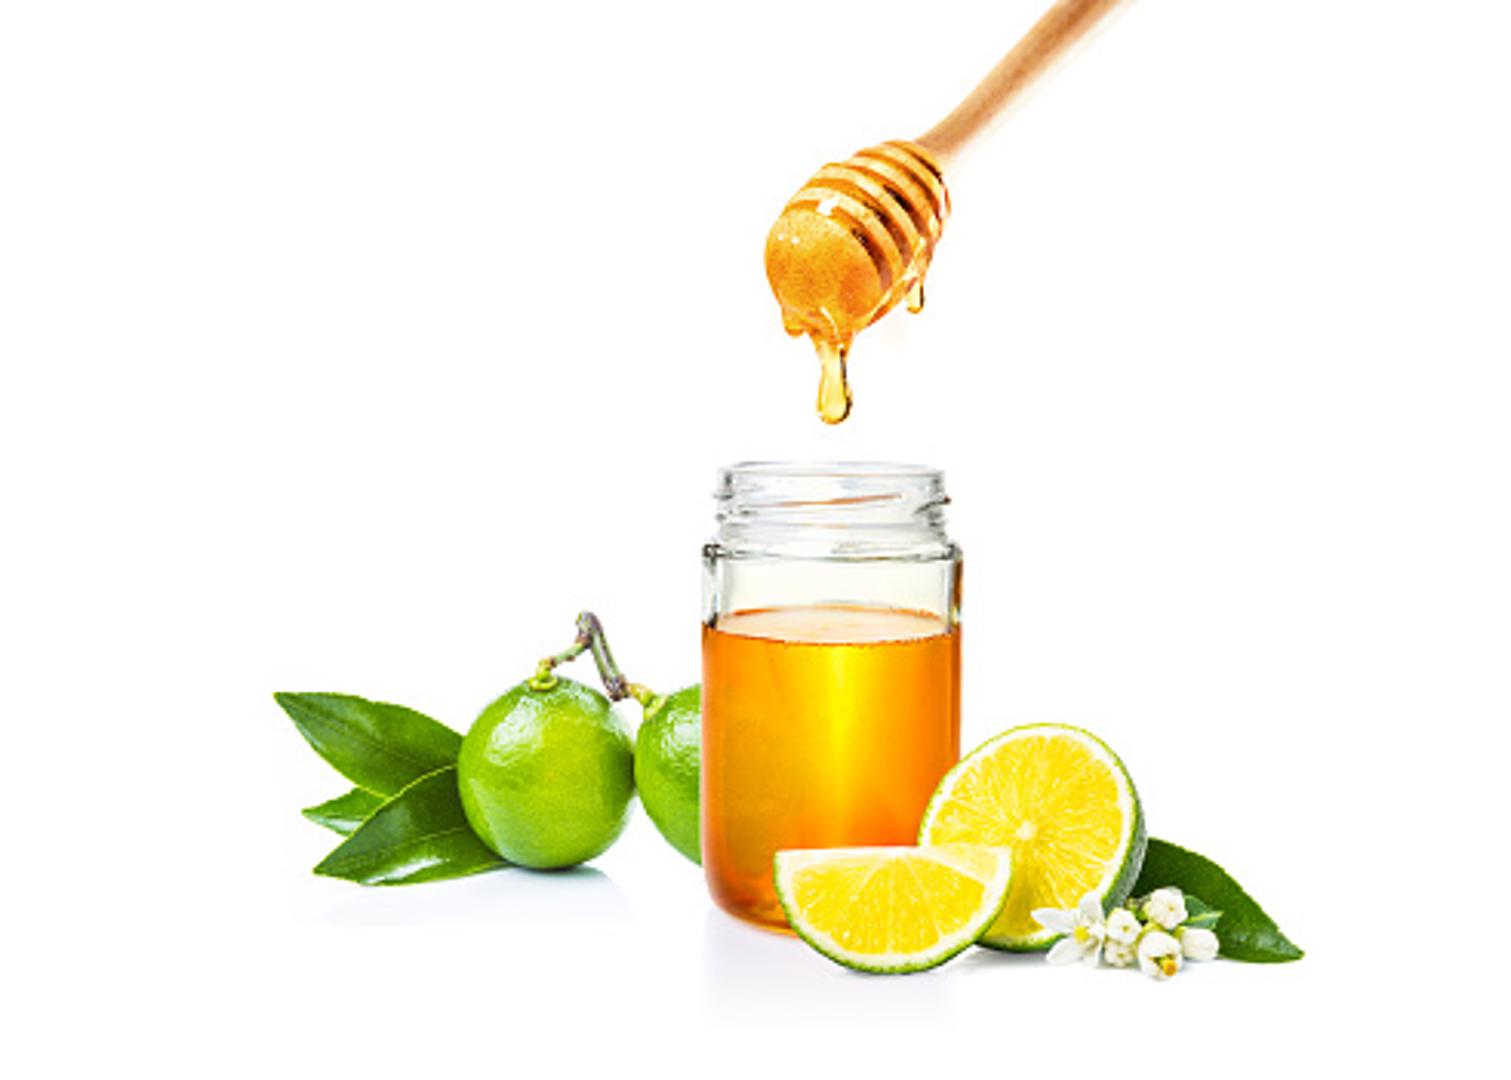 Med i limun- Pomiješajte dvije jušne žlice šećera i soka od limuna i jednu žlicu meda. Zagrijavajte smjesu oko tri  minute, dodajte vode ako je potrebno. Nakon toga smjesa je spremna za uporabu, poput voska, nanesite je na područje s dlačicama koje želite ukloniti. 

